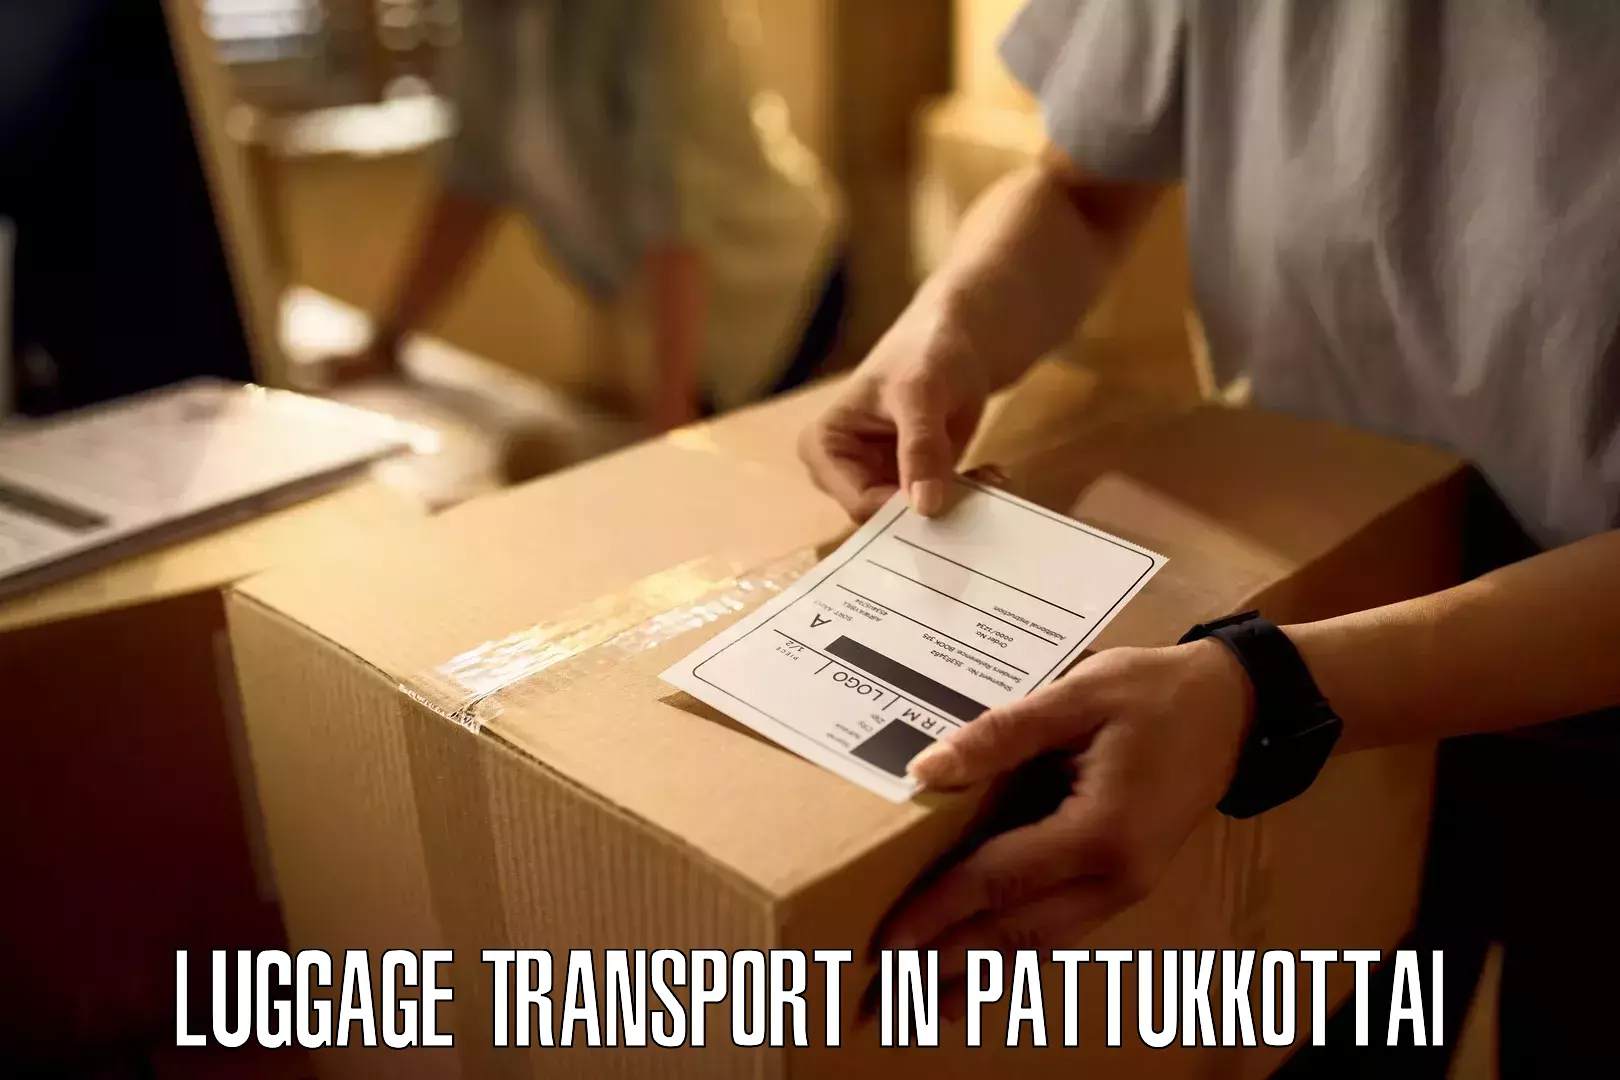 Luggage transport schedule in Pattukkottai